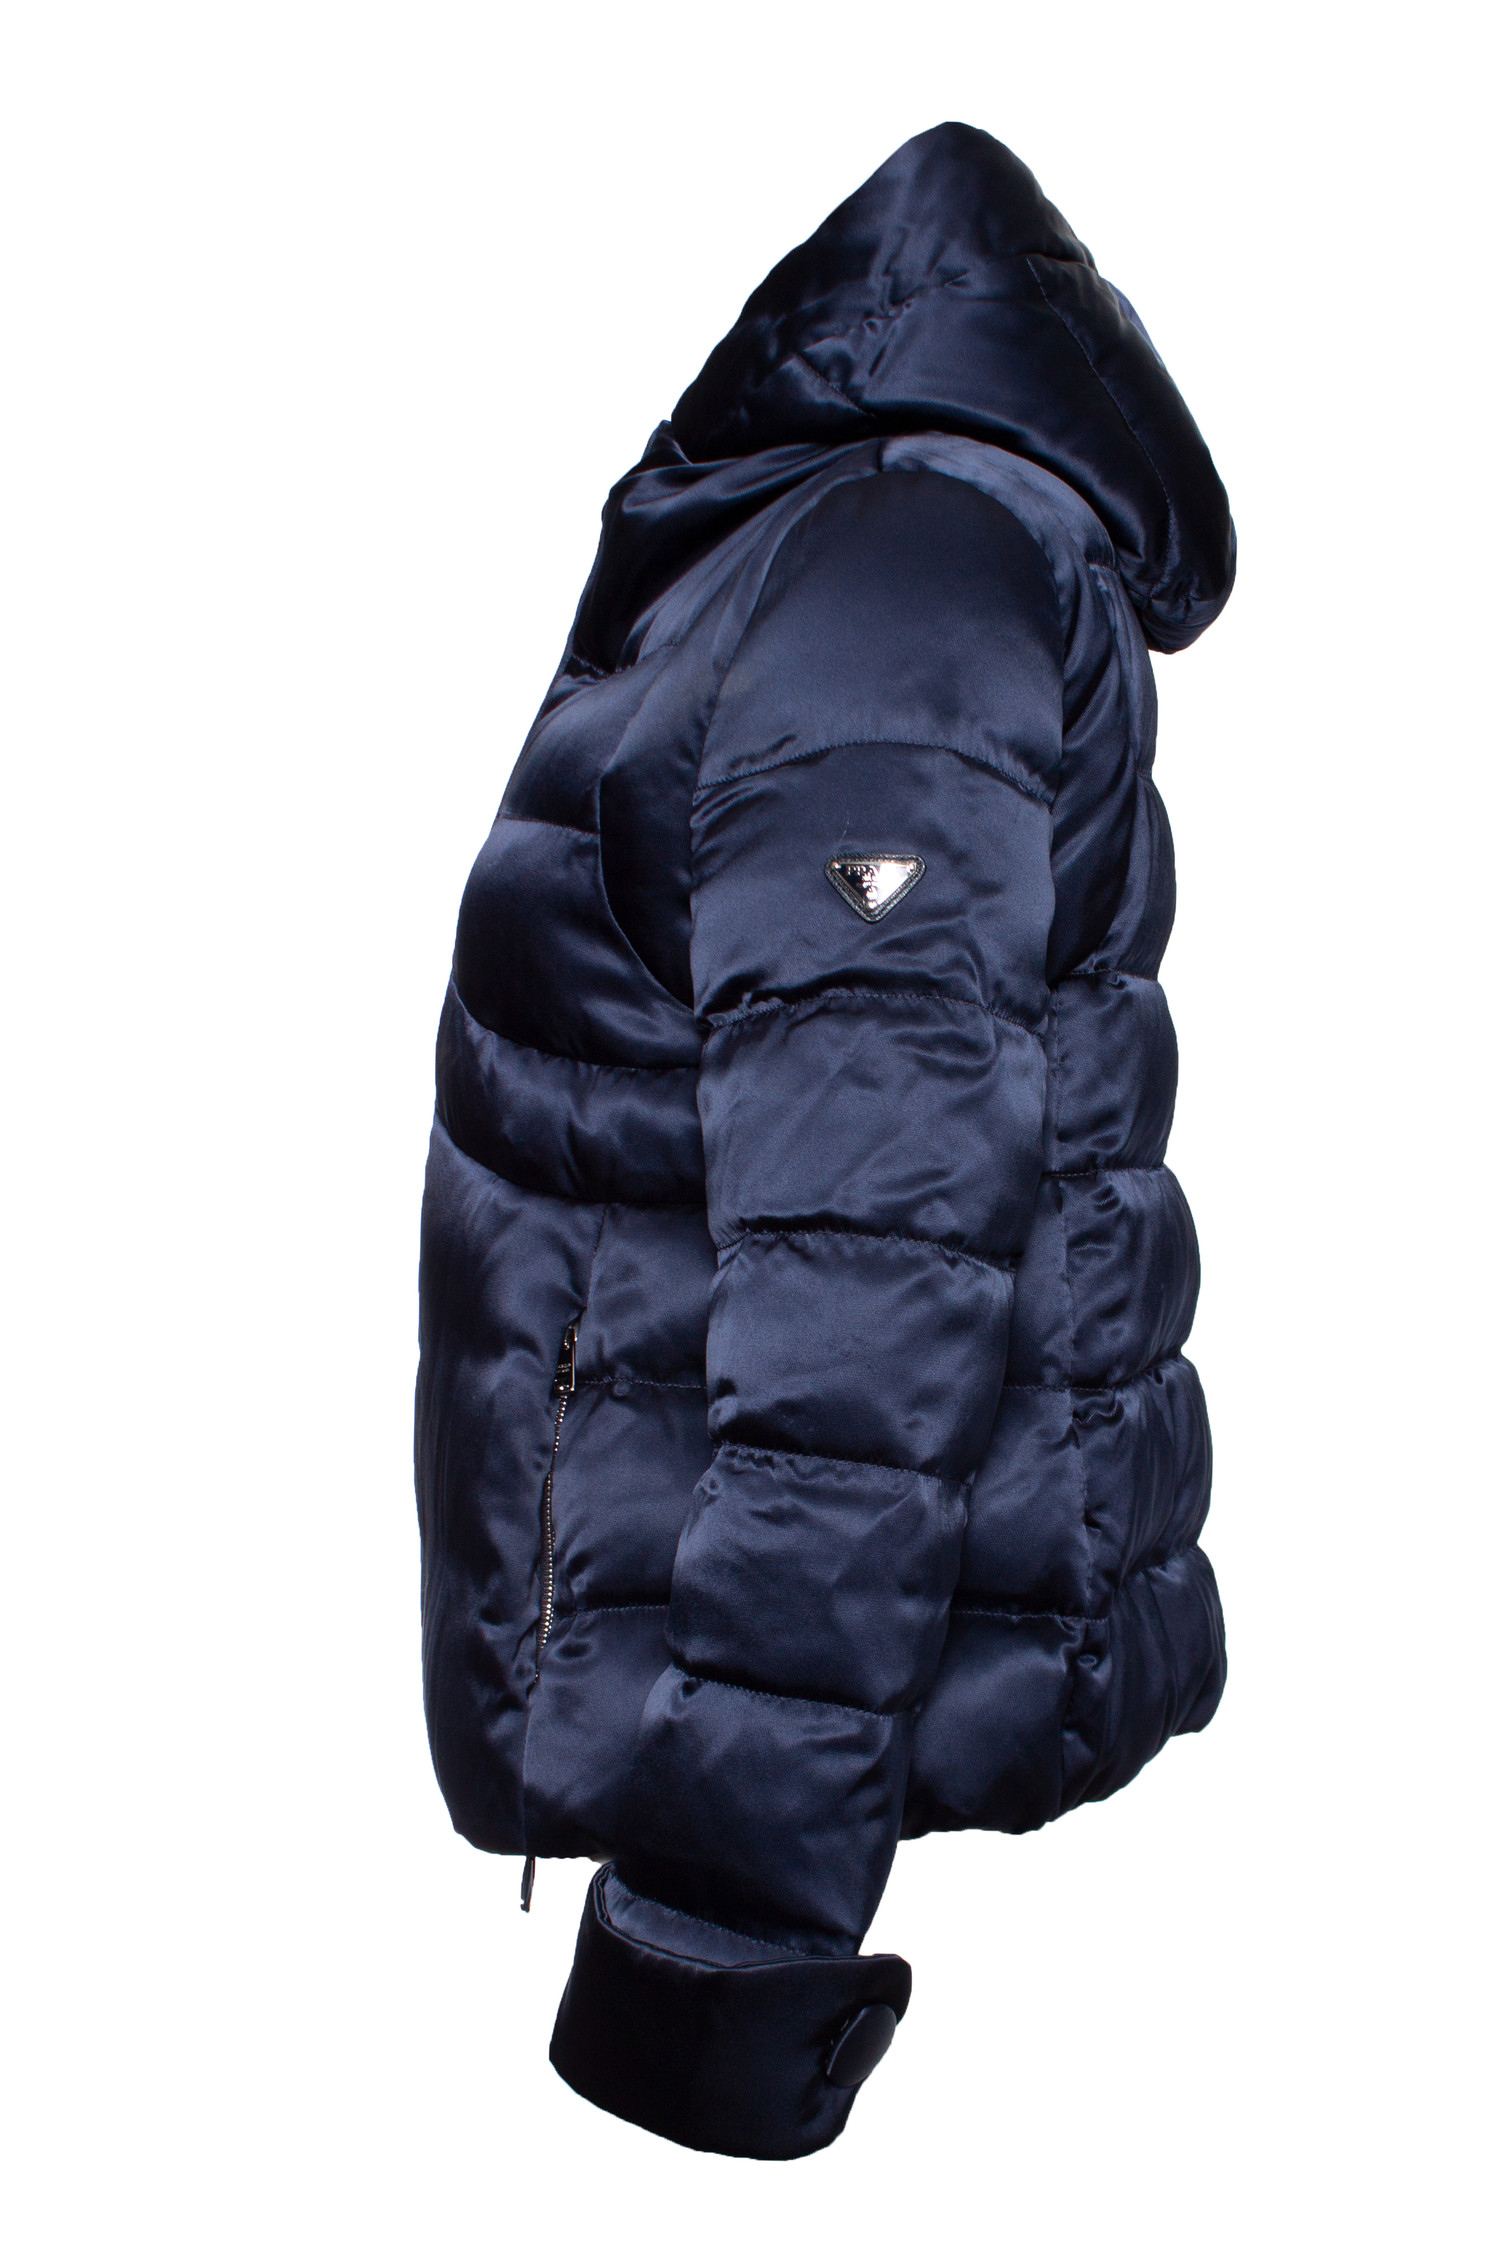 Prada, Blue shiny hooded puffer coat. - Unique Designer Pieces